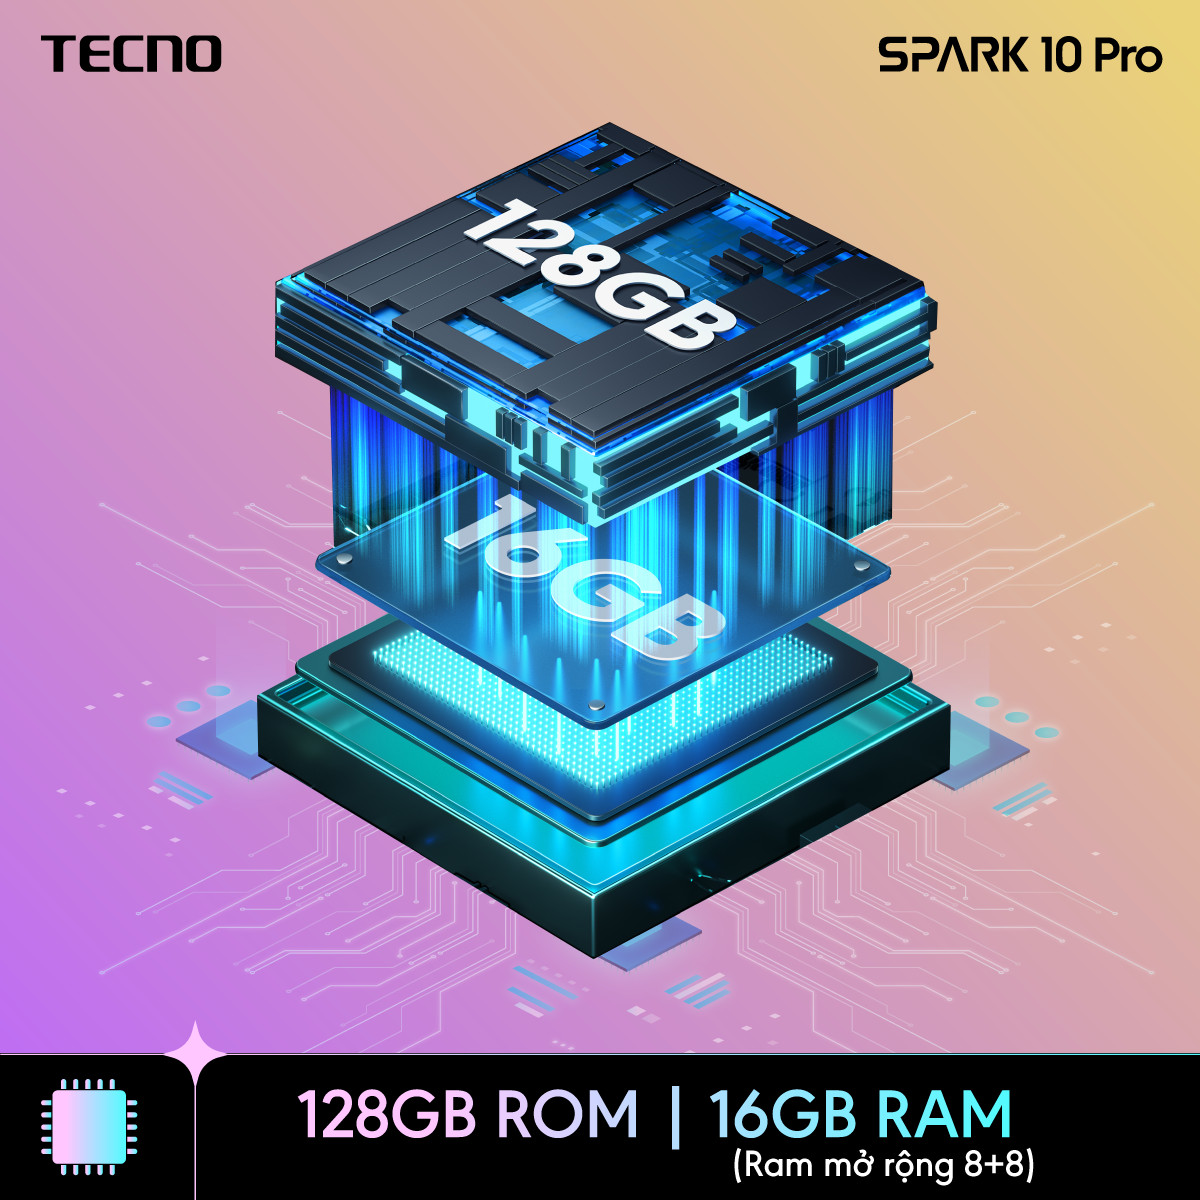 Điện thoại Tecno SPARK 10 Pro 8GB/128GB - Helio G88 | 5000 mAh | Sạc nhanh 18W | Cảm ứng vân tay - Hàng chính hãng